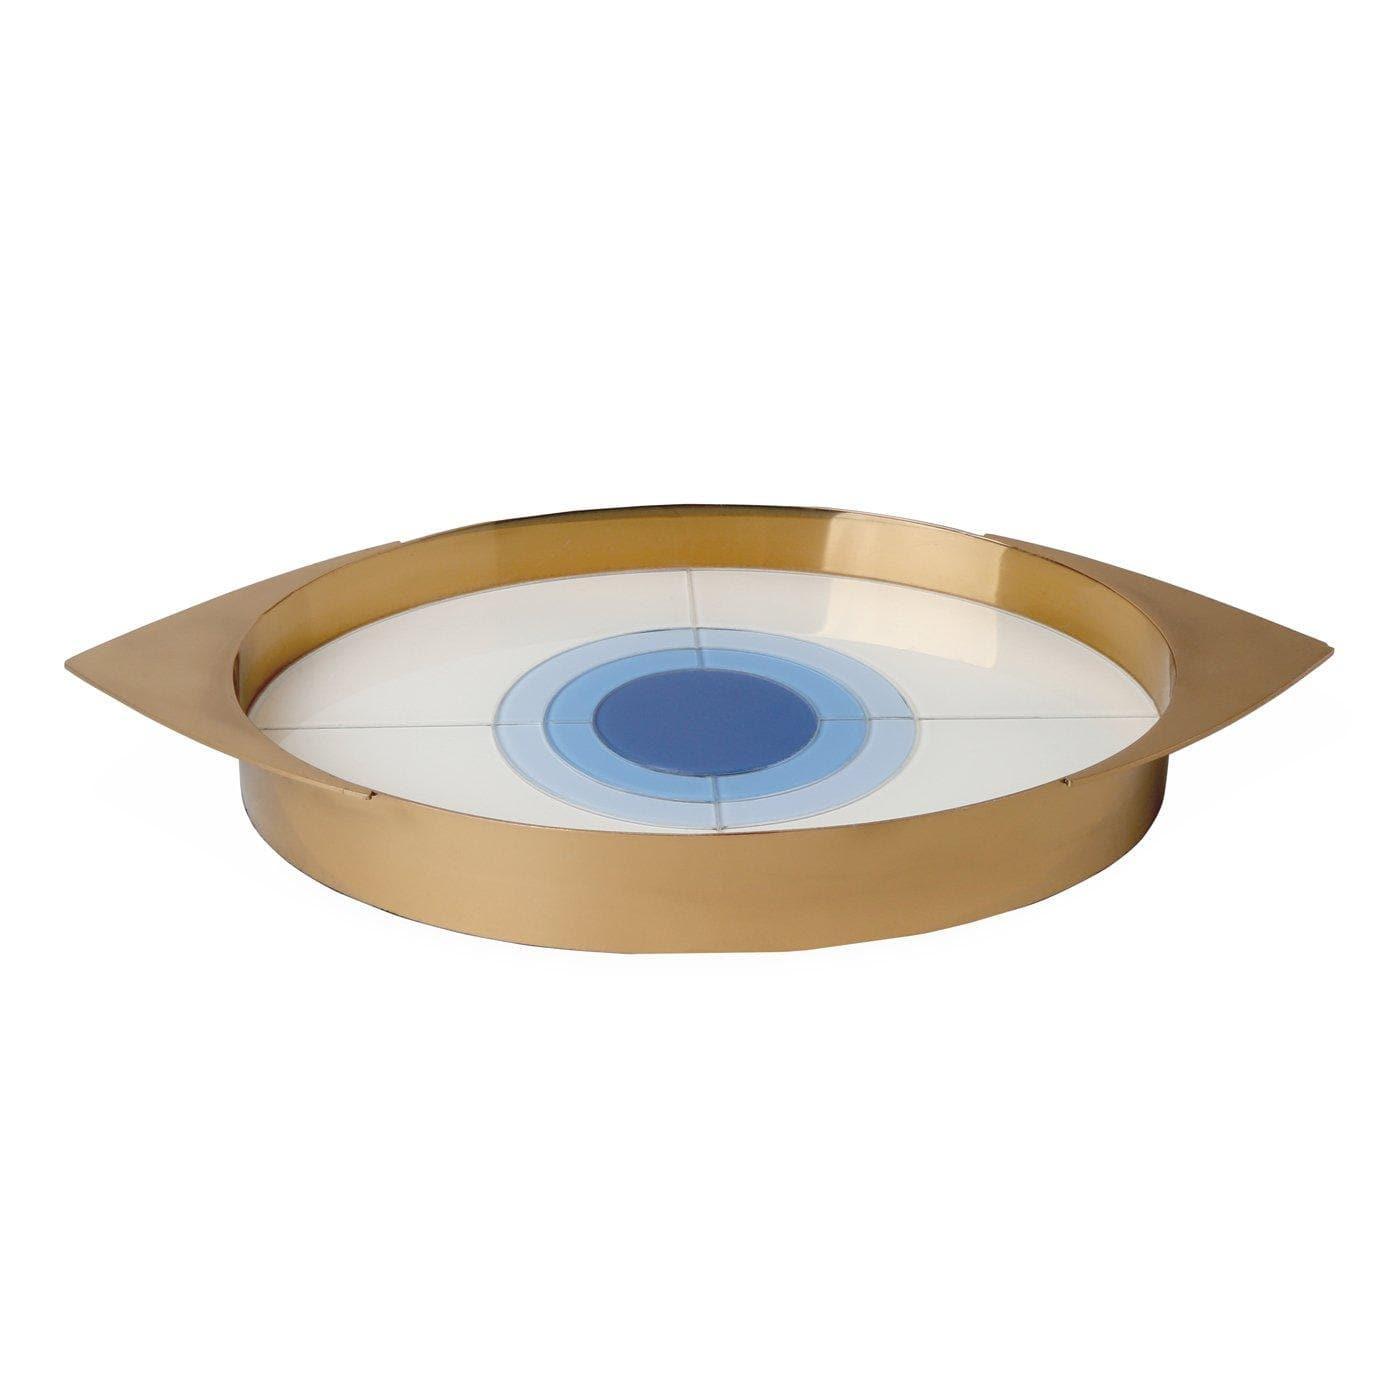 Jonathan Adler - Harlequin Eye Tray - 29981 | Montreal Lighting & Hardware